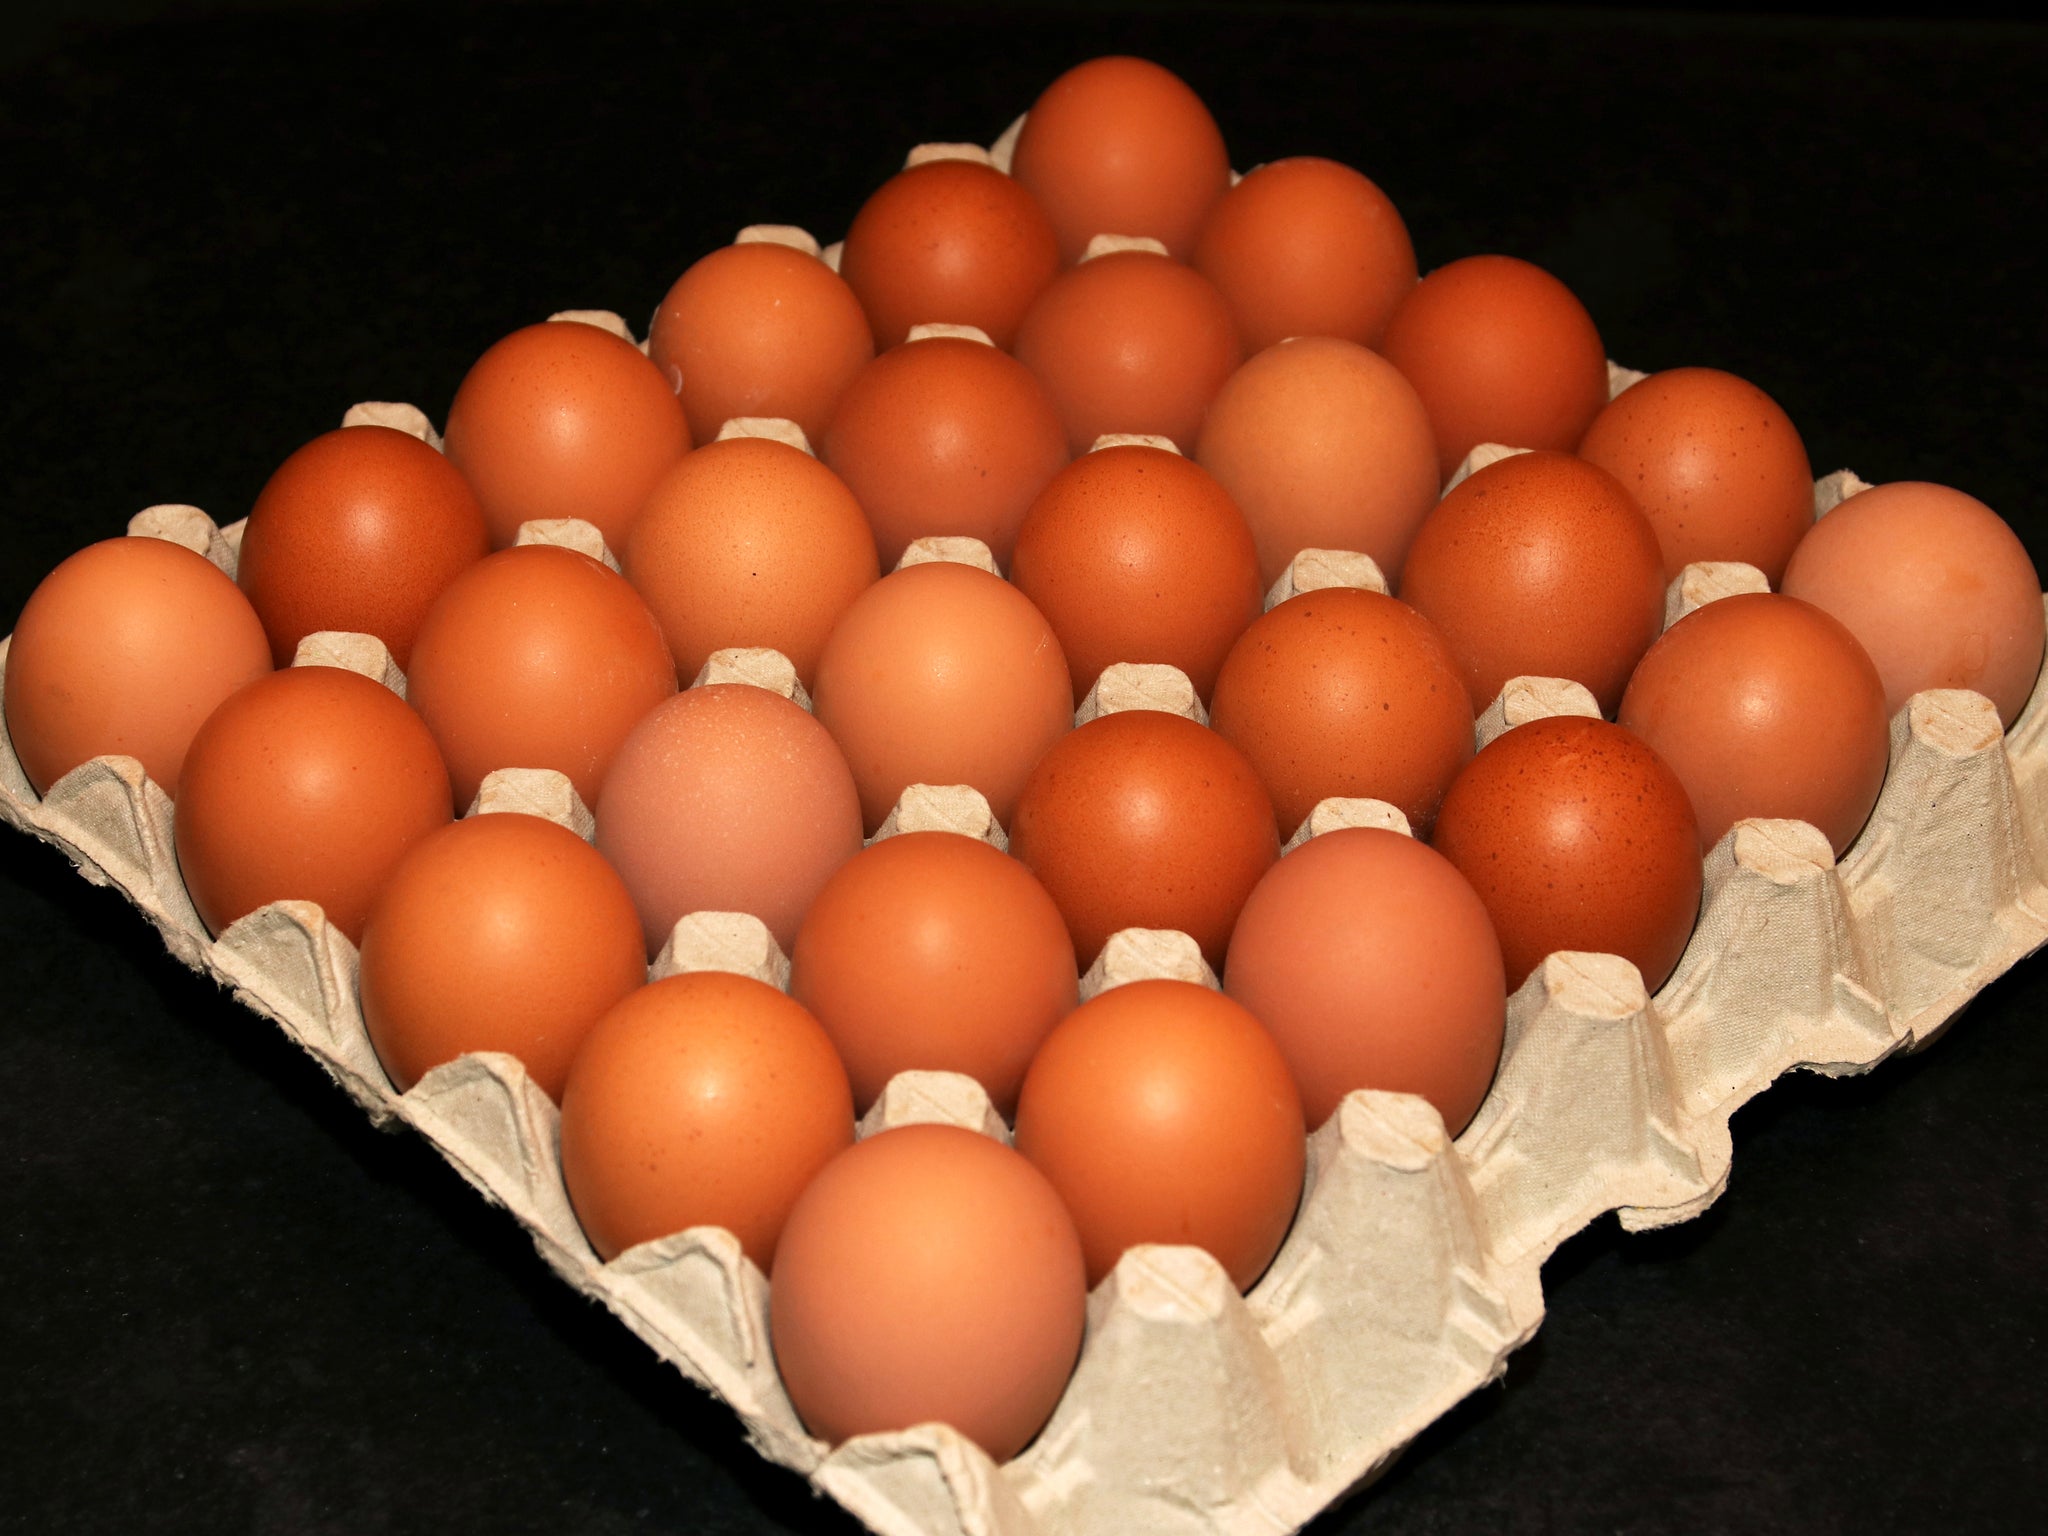 Tray of 30 Large Free Range Eggs